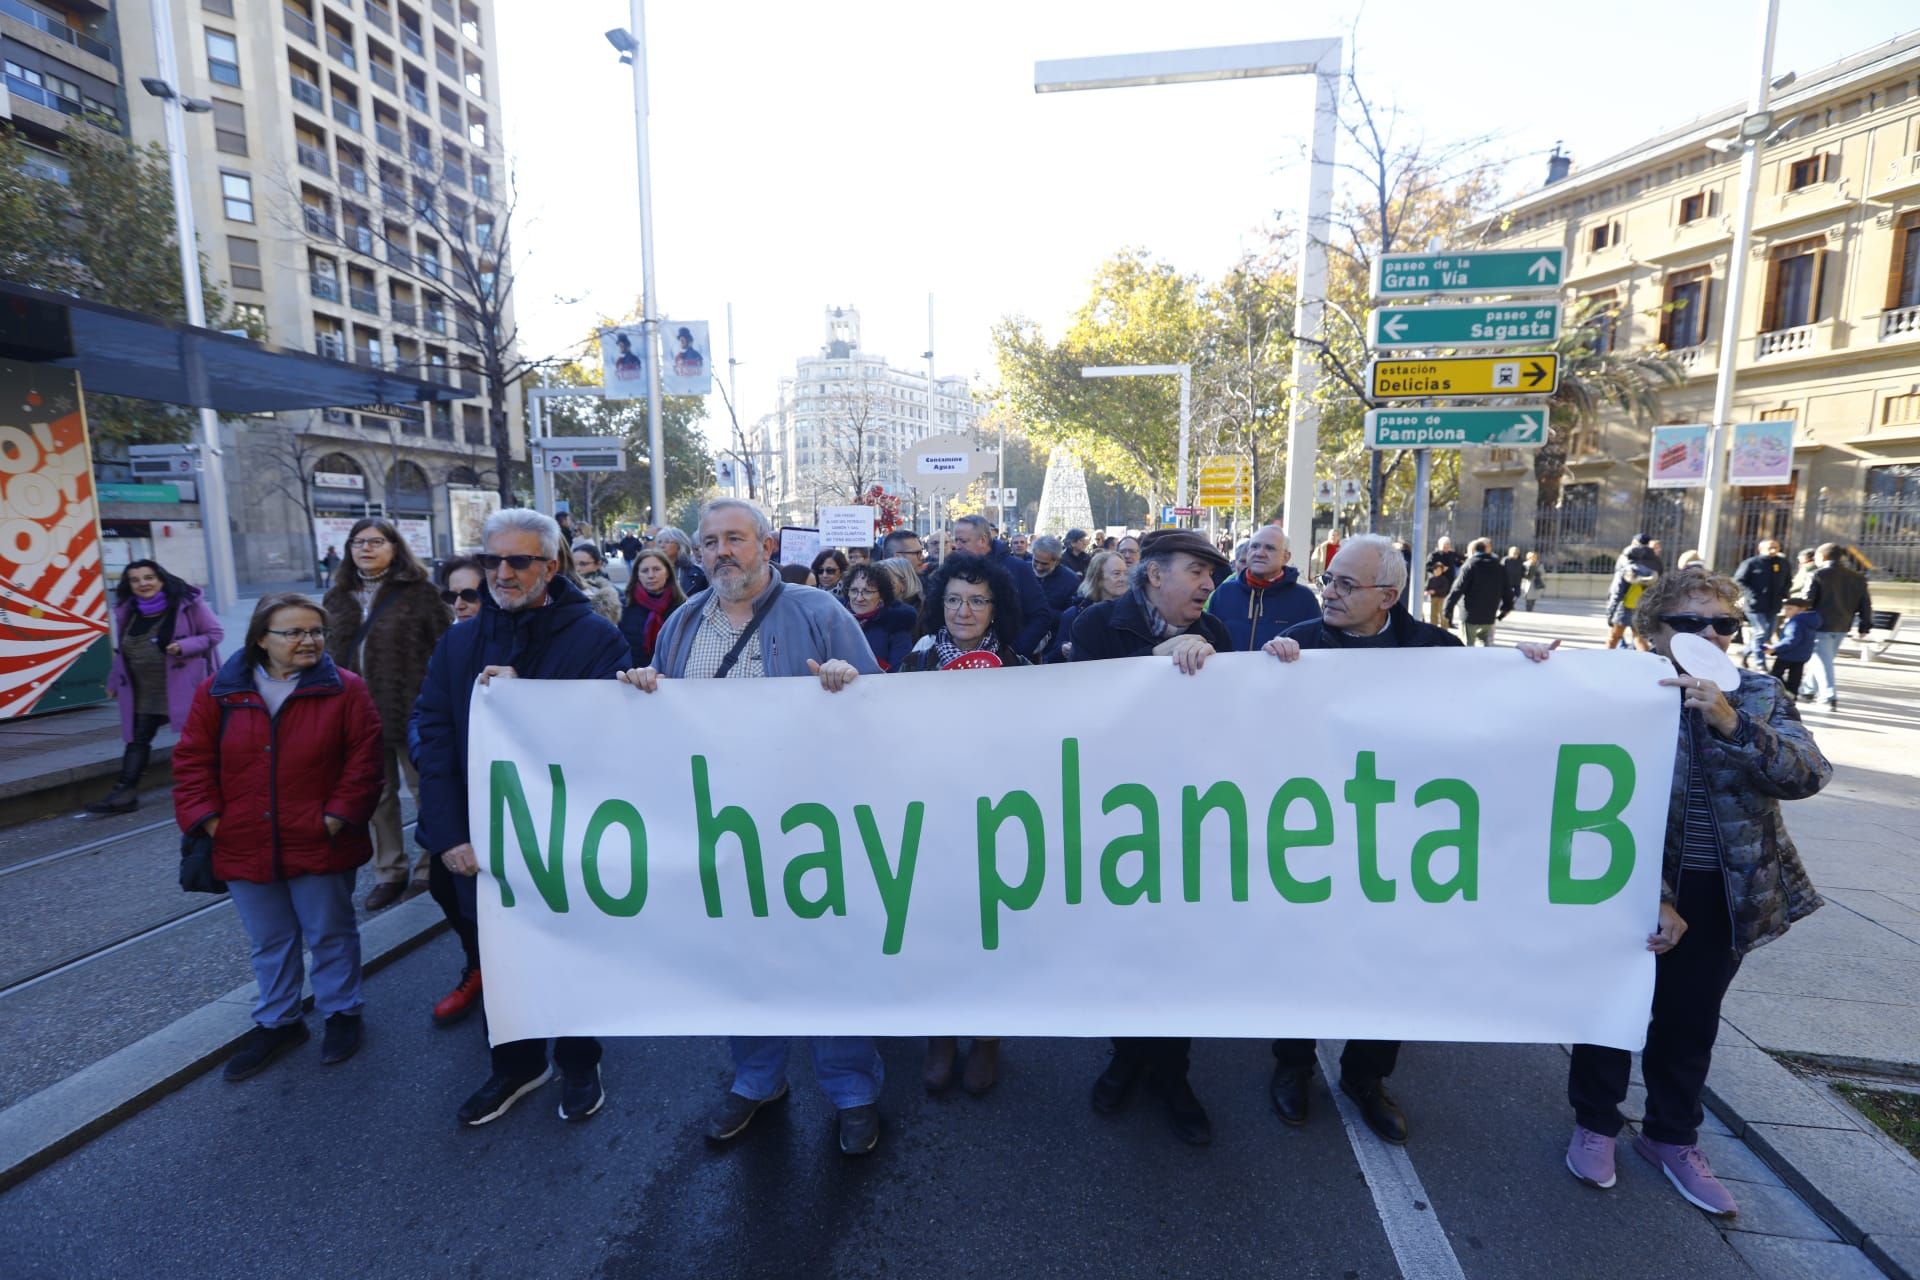 'No hay planeta B' o 'ganadería industrial no', entre las pancartas de la protesta por el cambio climático